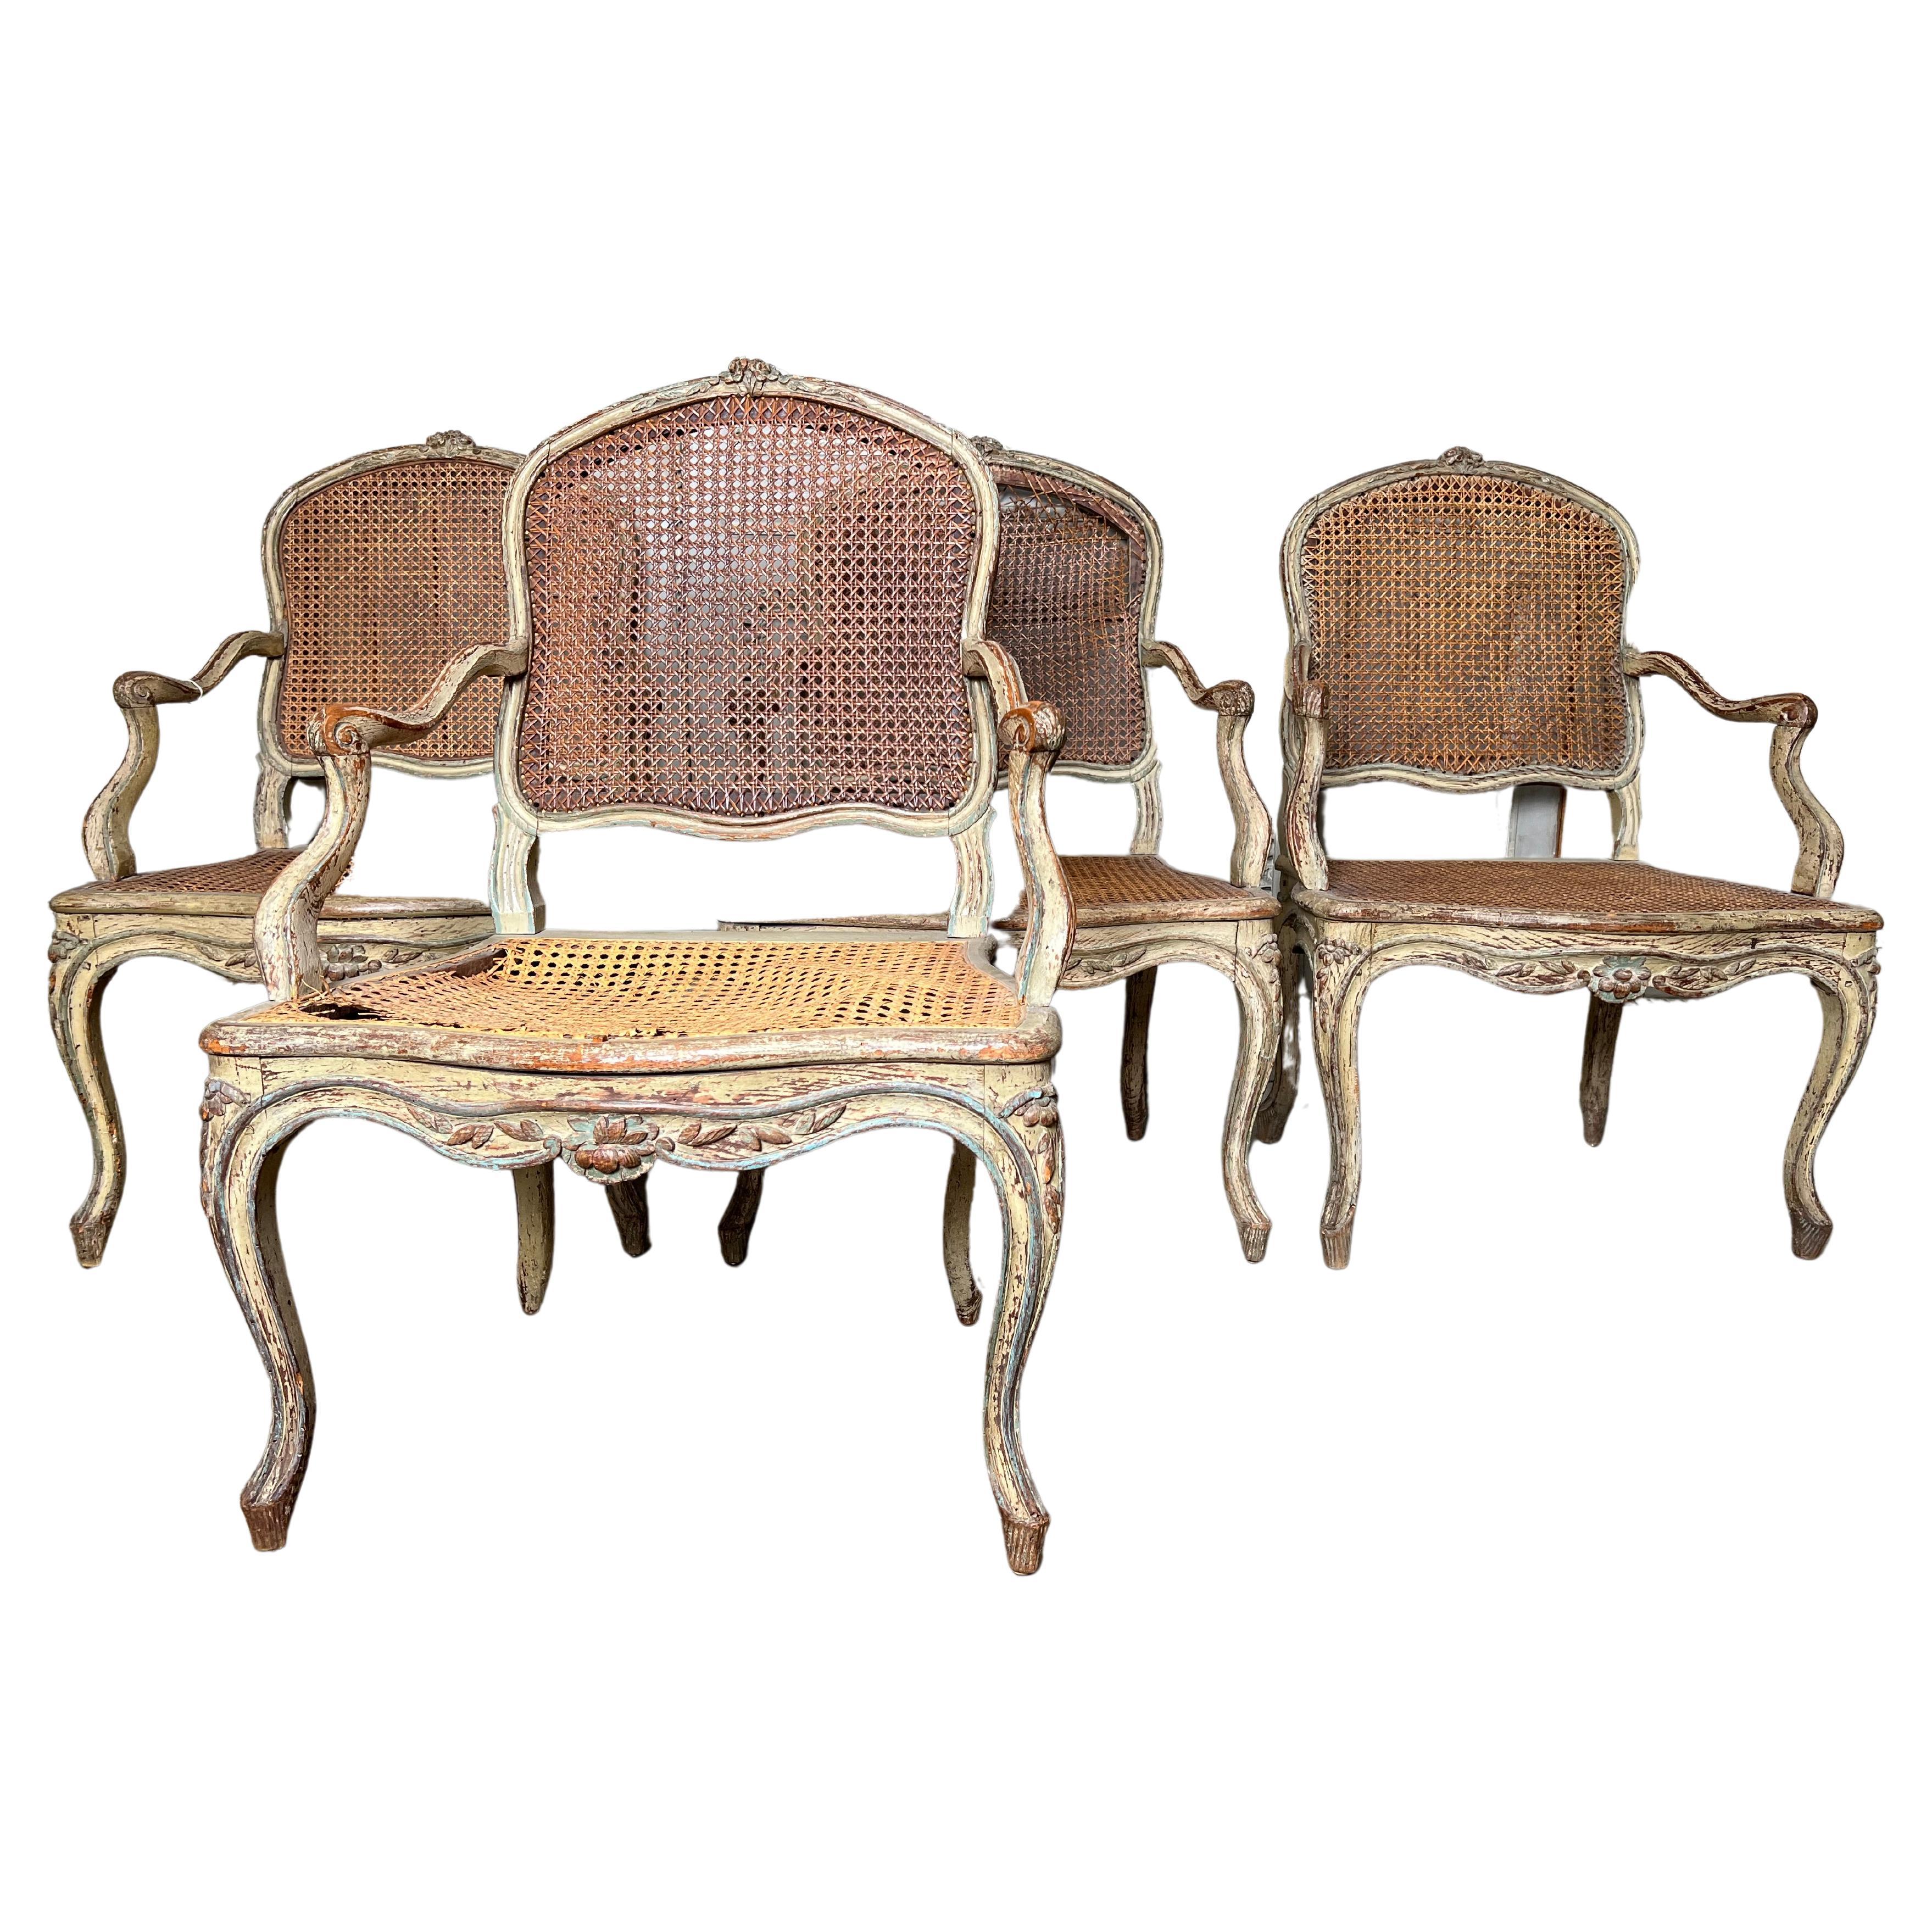 Louis XV furniture characteristics - un fauteuil. Rococo